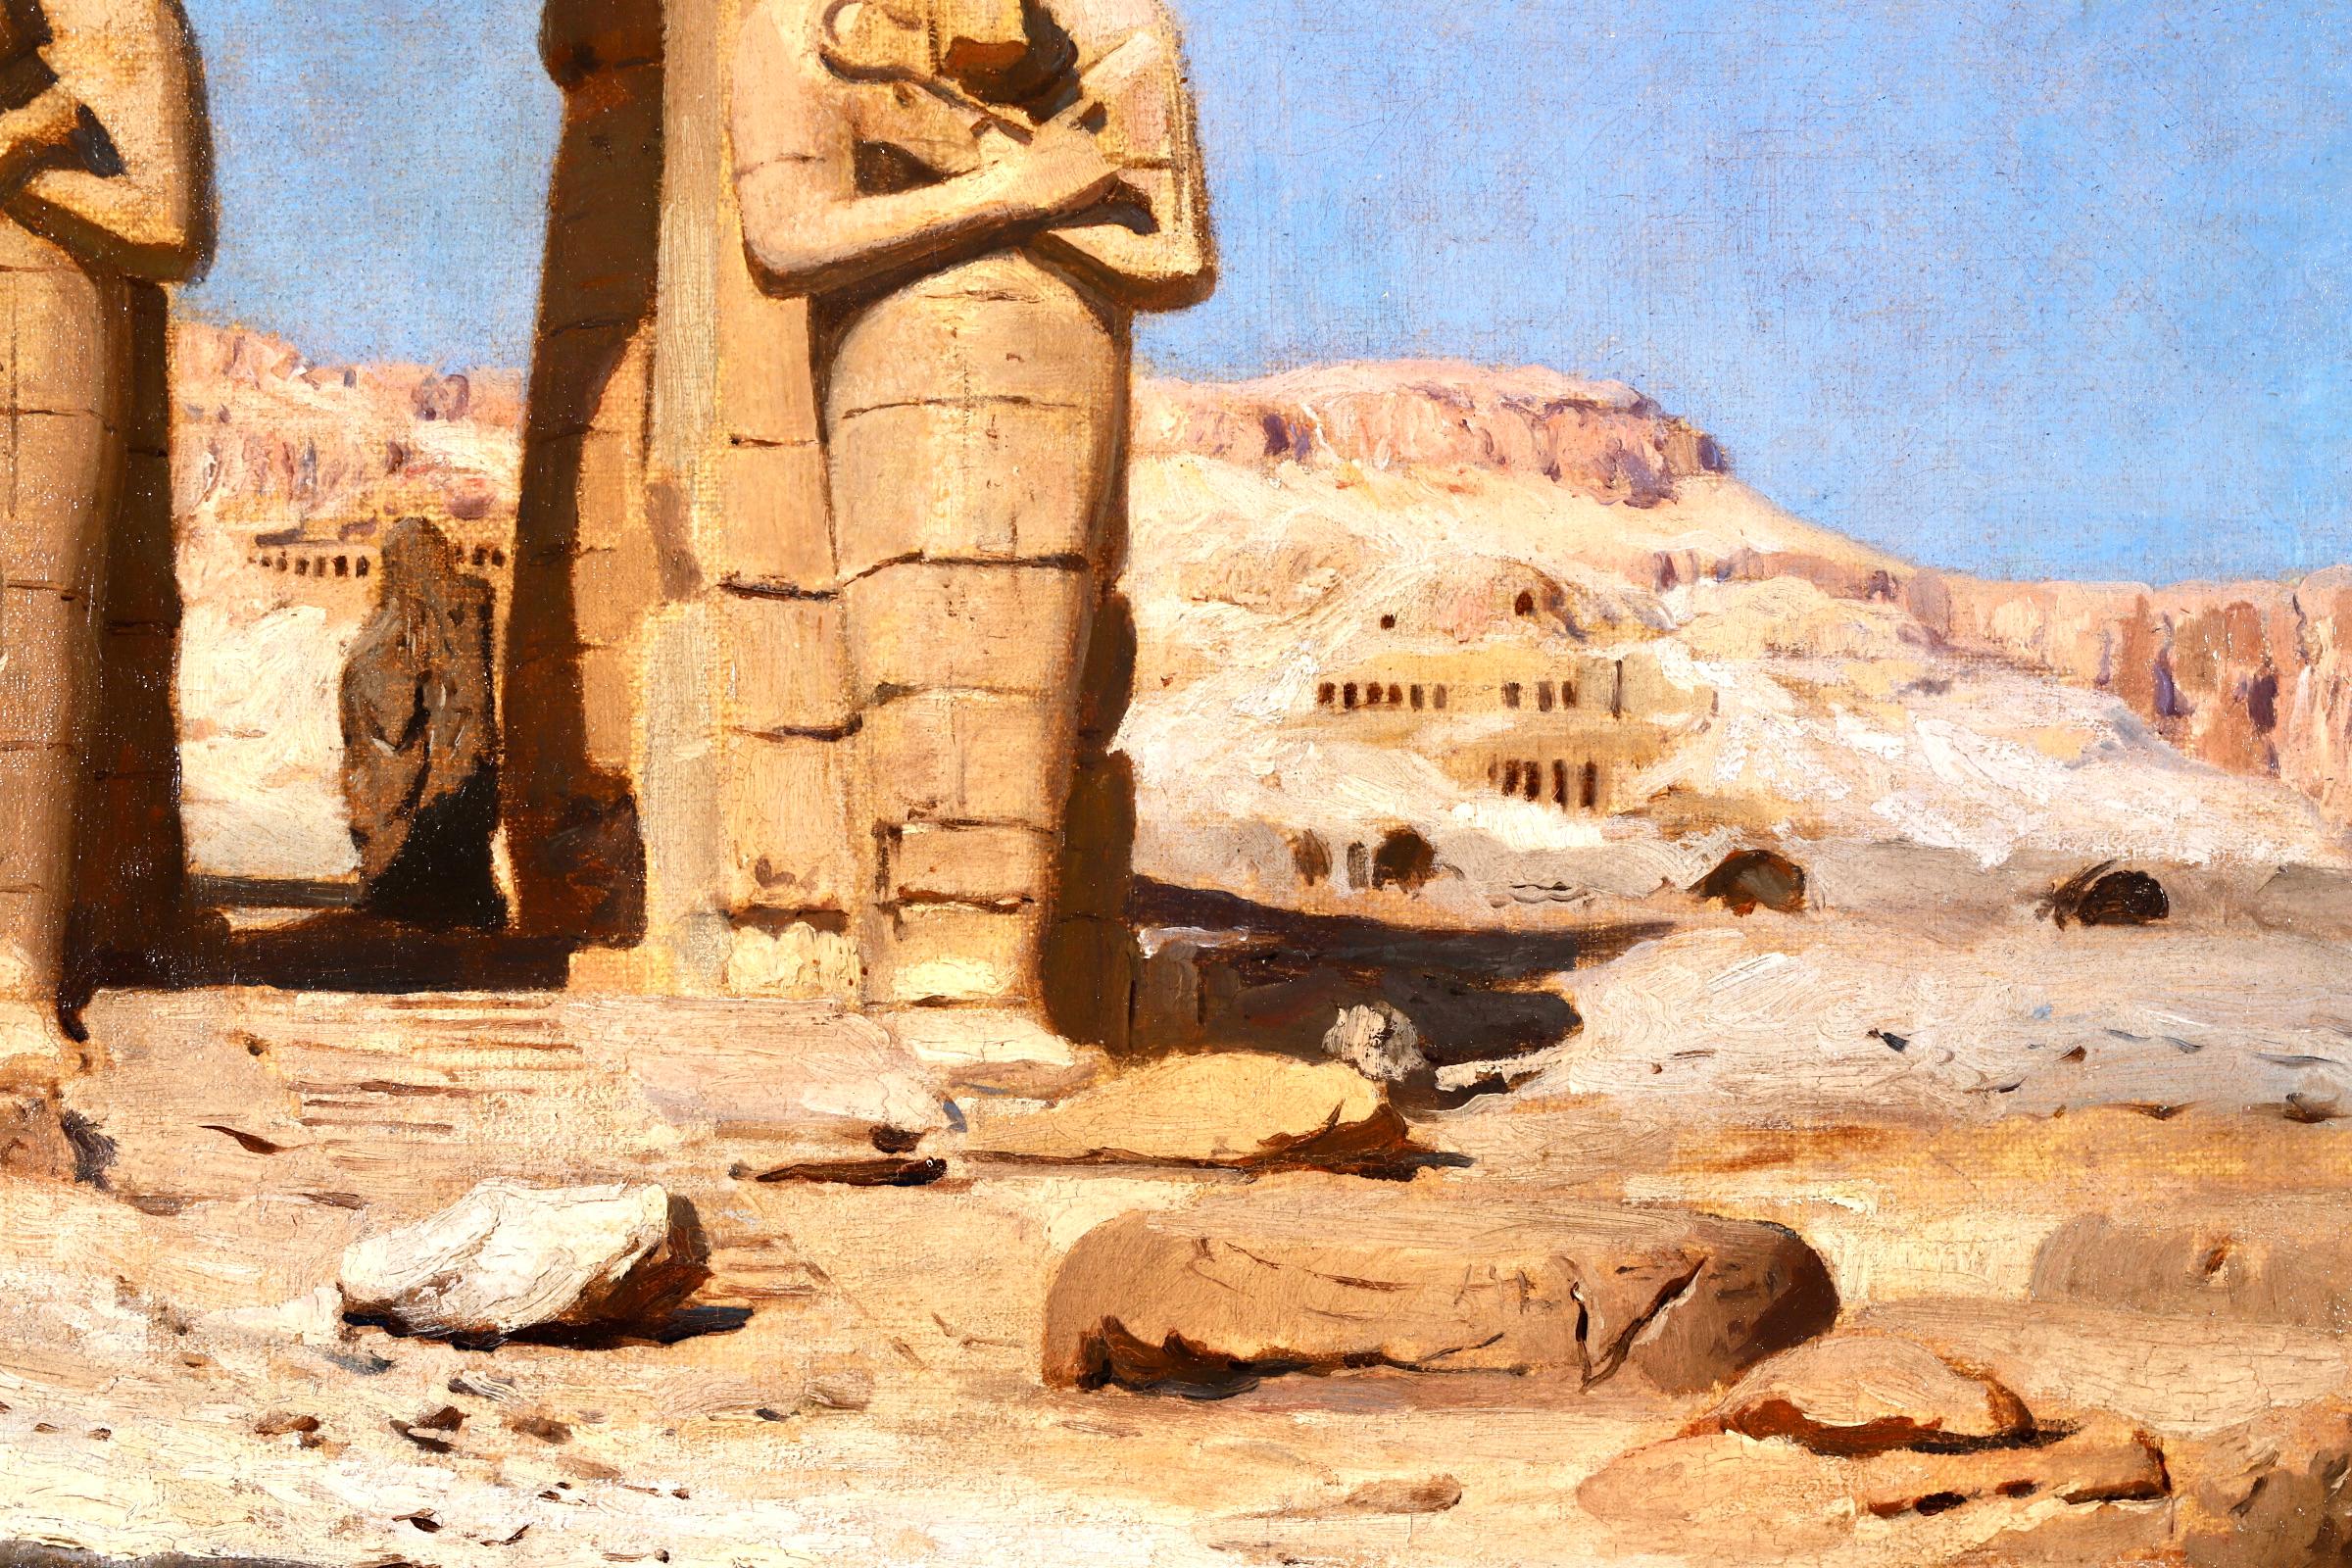 Colossi of Memnon, Egypt - Orientalist Landscape Oil - Frederick Arthur Bridgman 1